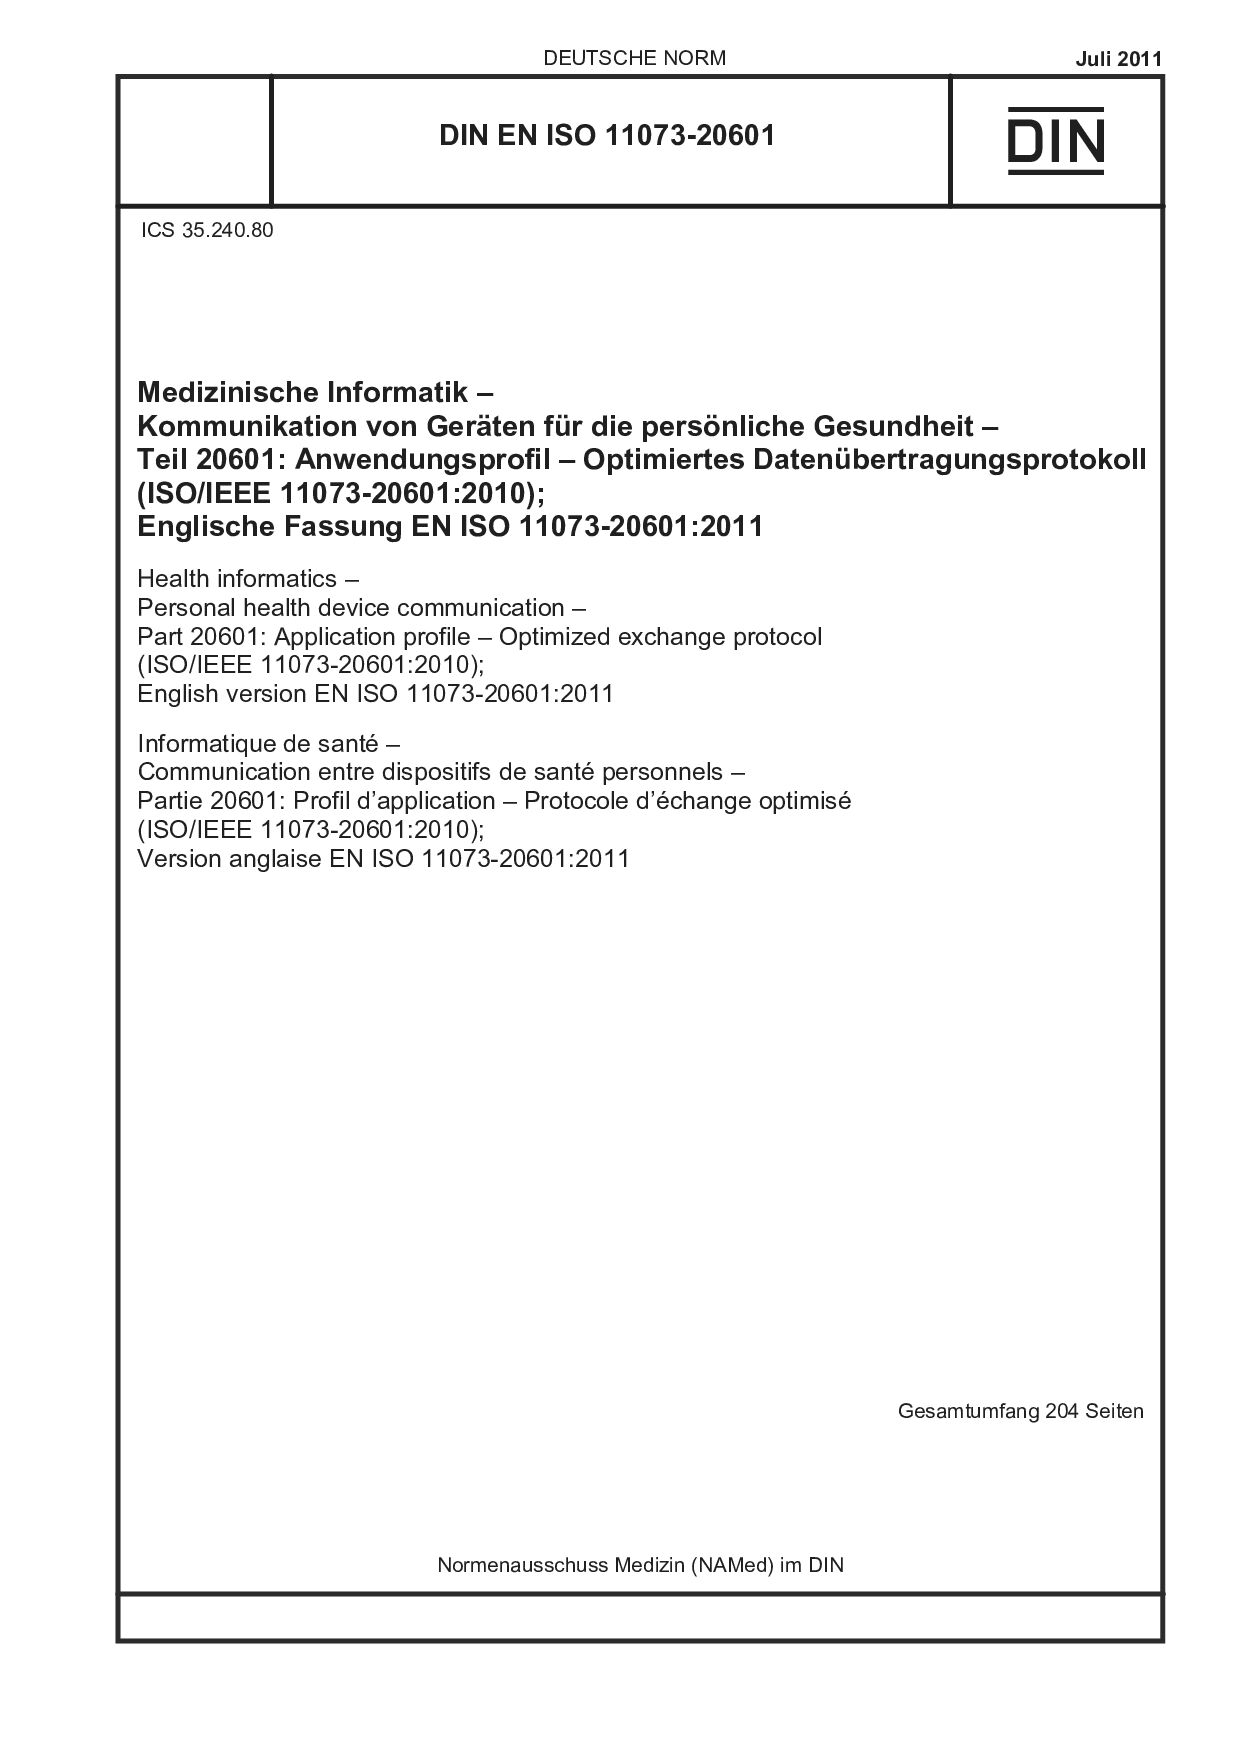 DIN EN ISO 11073-20601:2011